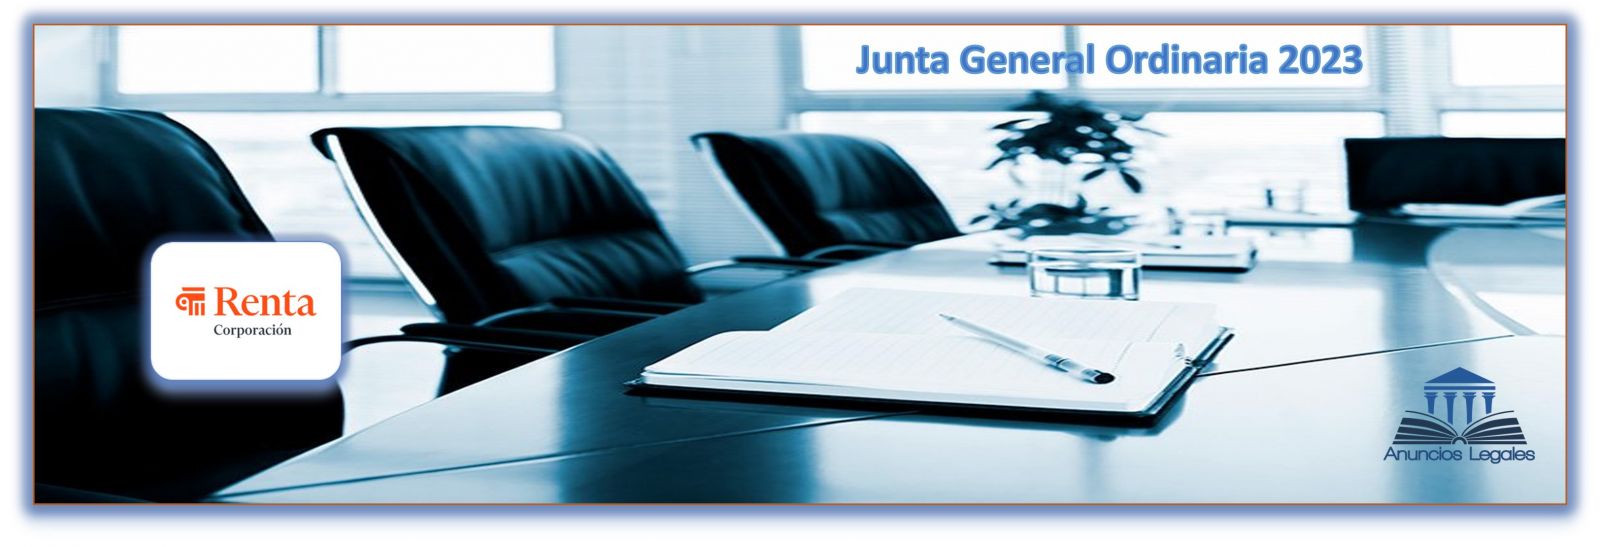 La sociedad Renta Corporación Real Estate anuncia Junta General Ordinaria de Accionistas 2023